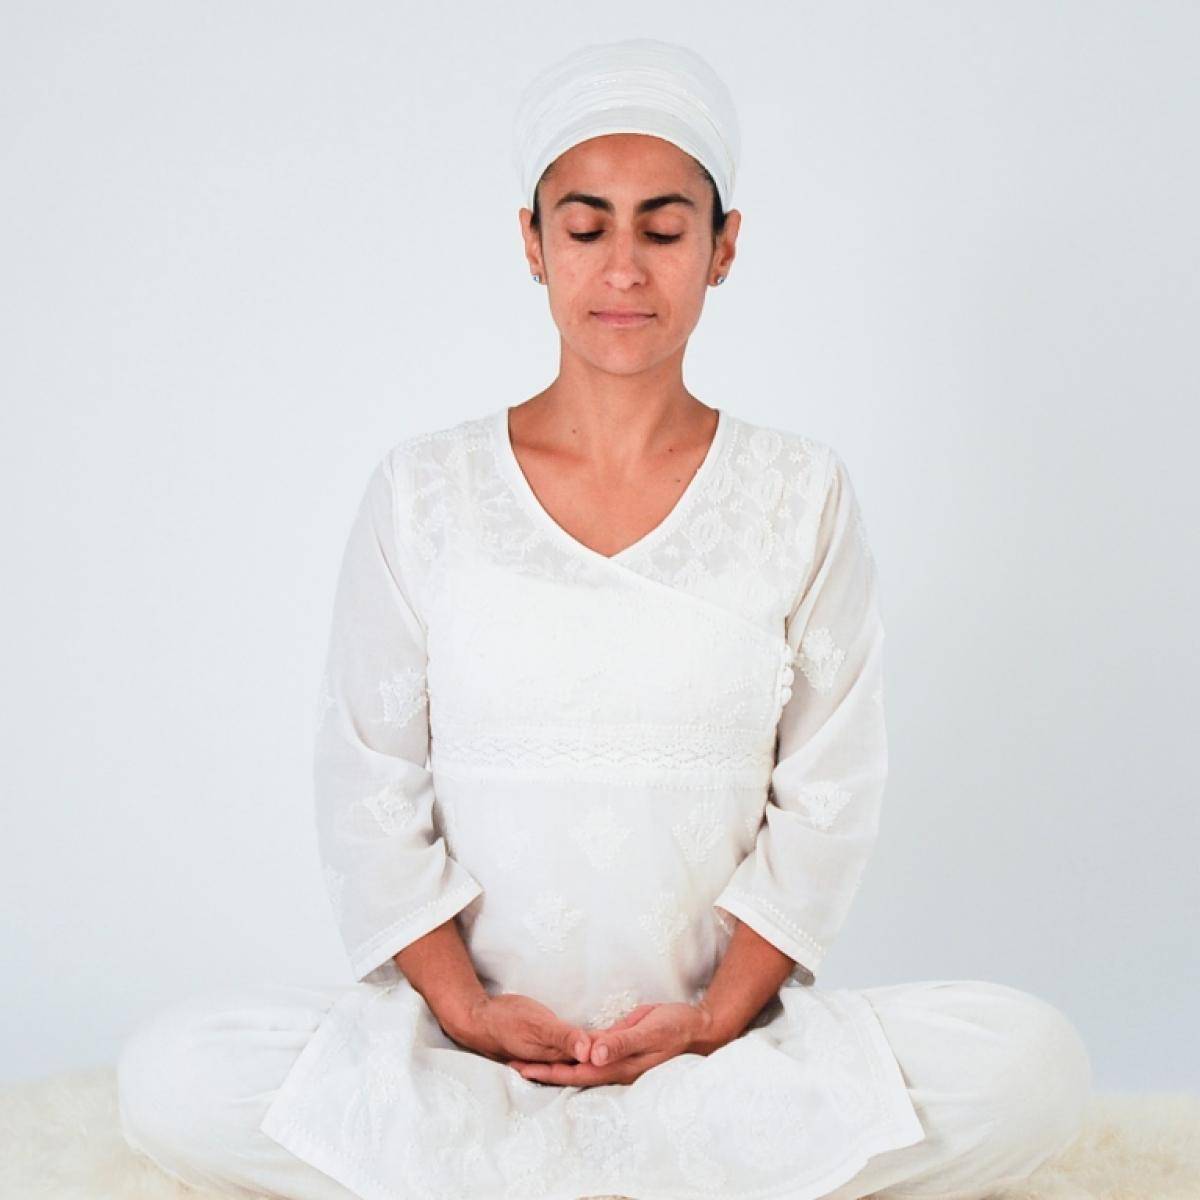 Субагх крийя - медитация для богатства и процветания